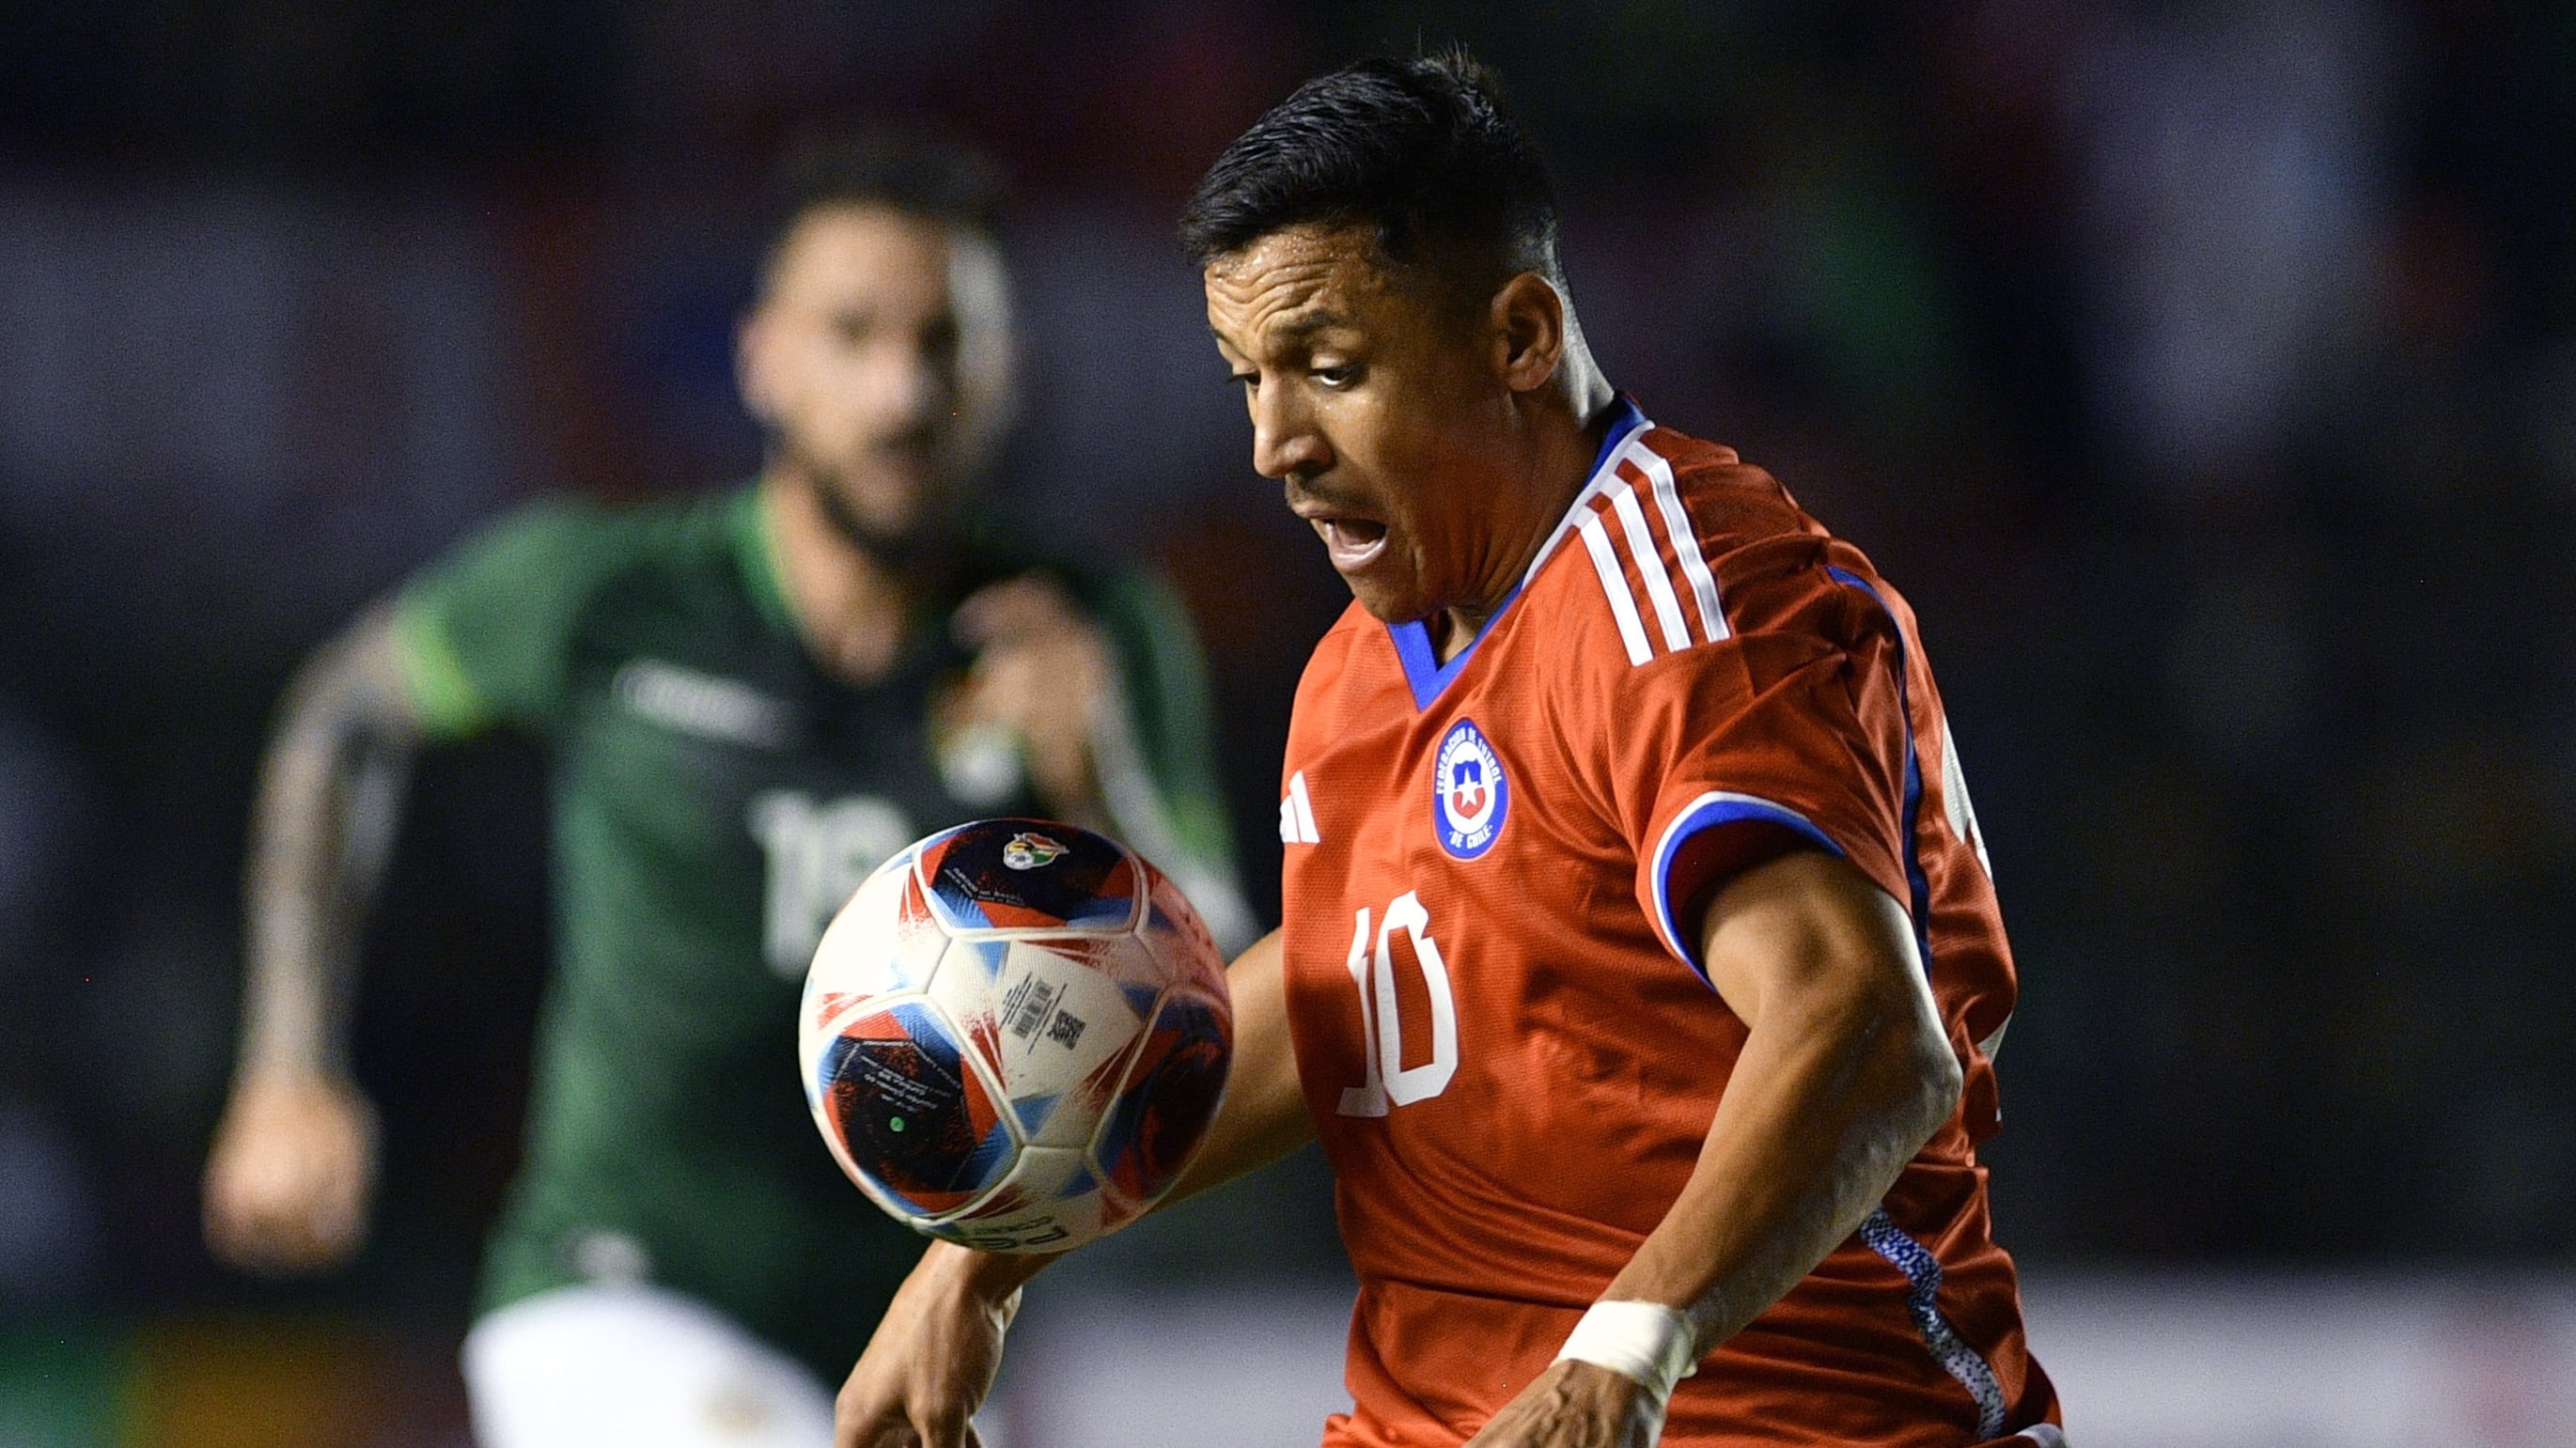 Alexis jugó su último partido el 21 de junio, ante Bolivia. / Aizar Raldés /AFP